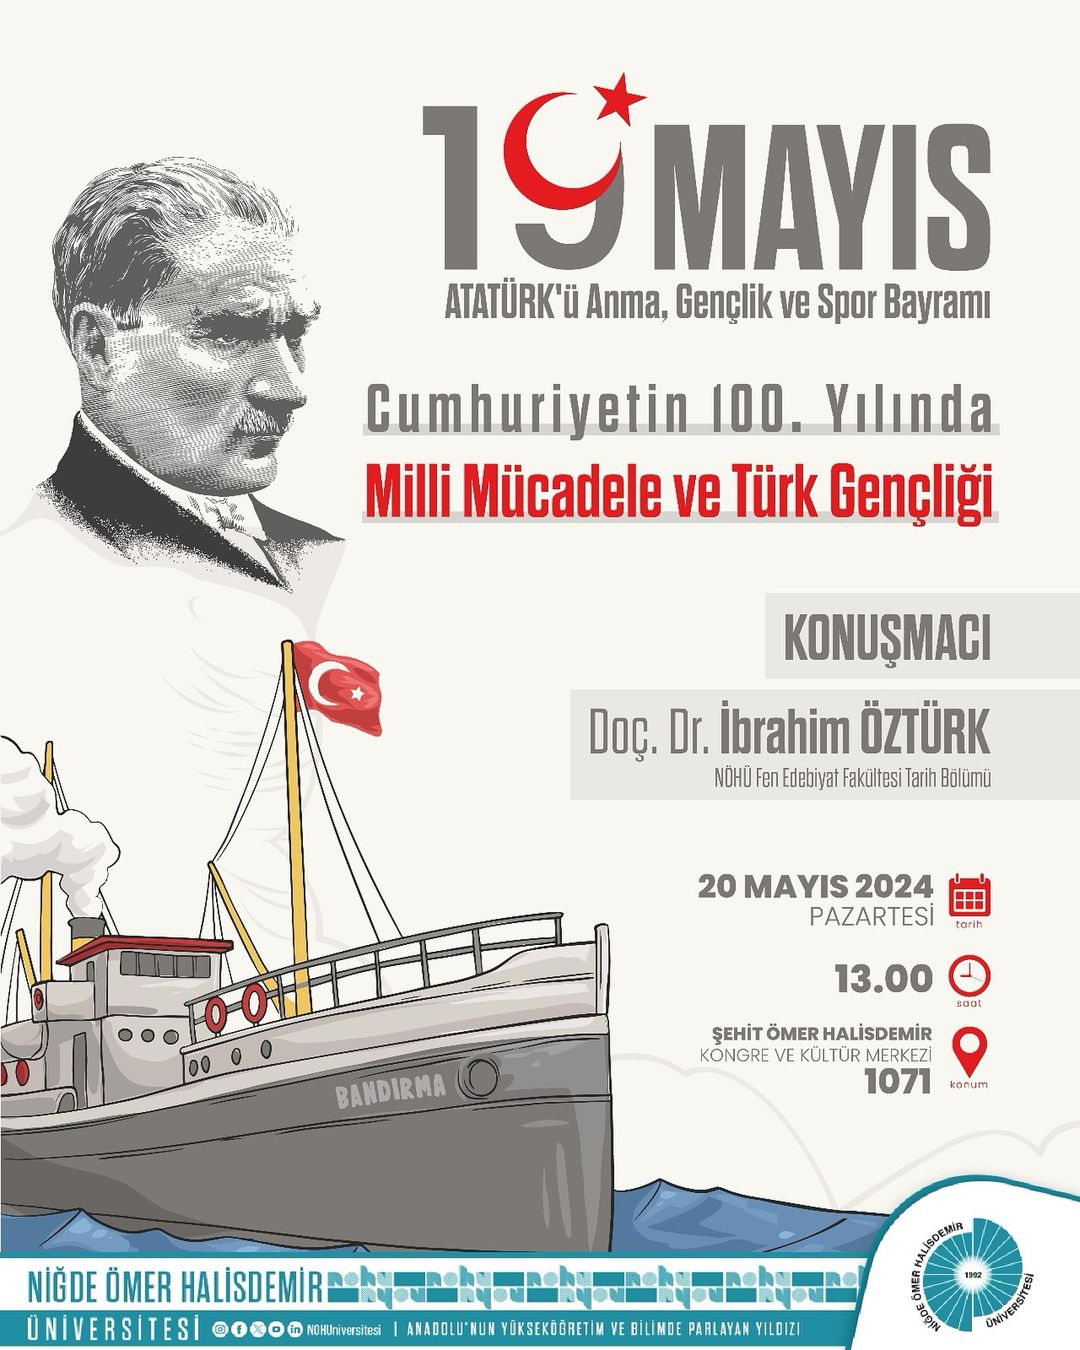 Niğde Ömer Halisdemir Üniversitesi, Cumhuriyetin 100. Yılında Milli Mücadele ve Türk Gençliği Konferansı Düzenliyor